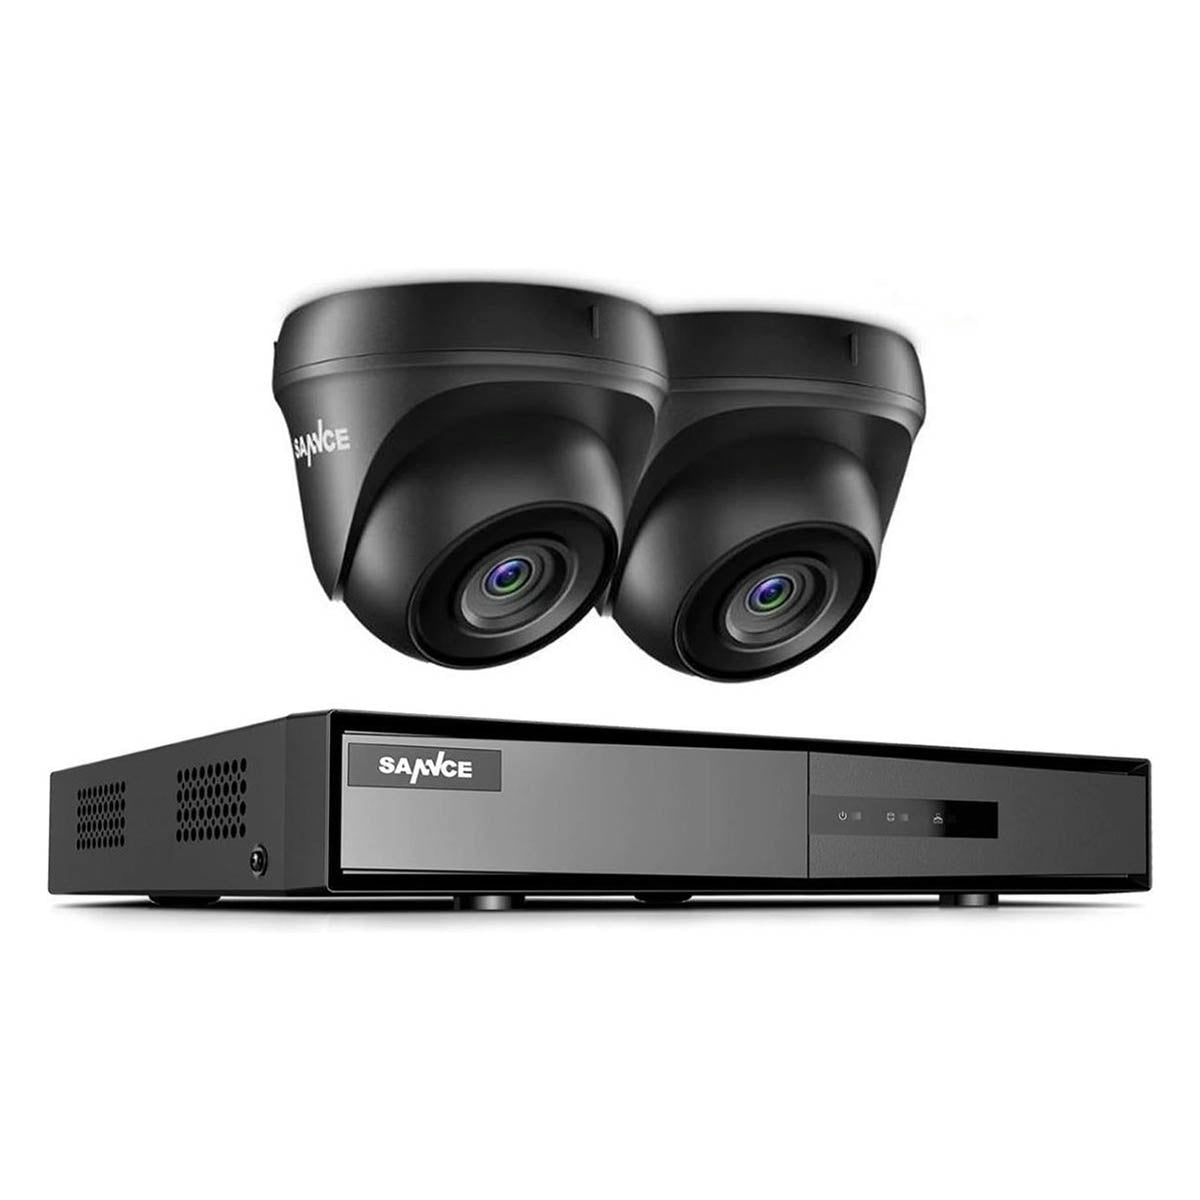 Ariko Système de vidéosurveillance Sannce Camera, 2 x caméras de sécurité 3MP noires de haute qualité, vision nocturne 25 mtr, images enregistrées et en direct en ligne, y compris disque dur de 1 To - Helpdesk néerlandais